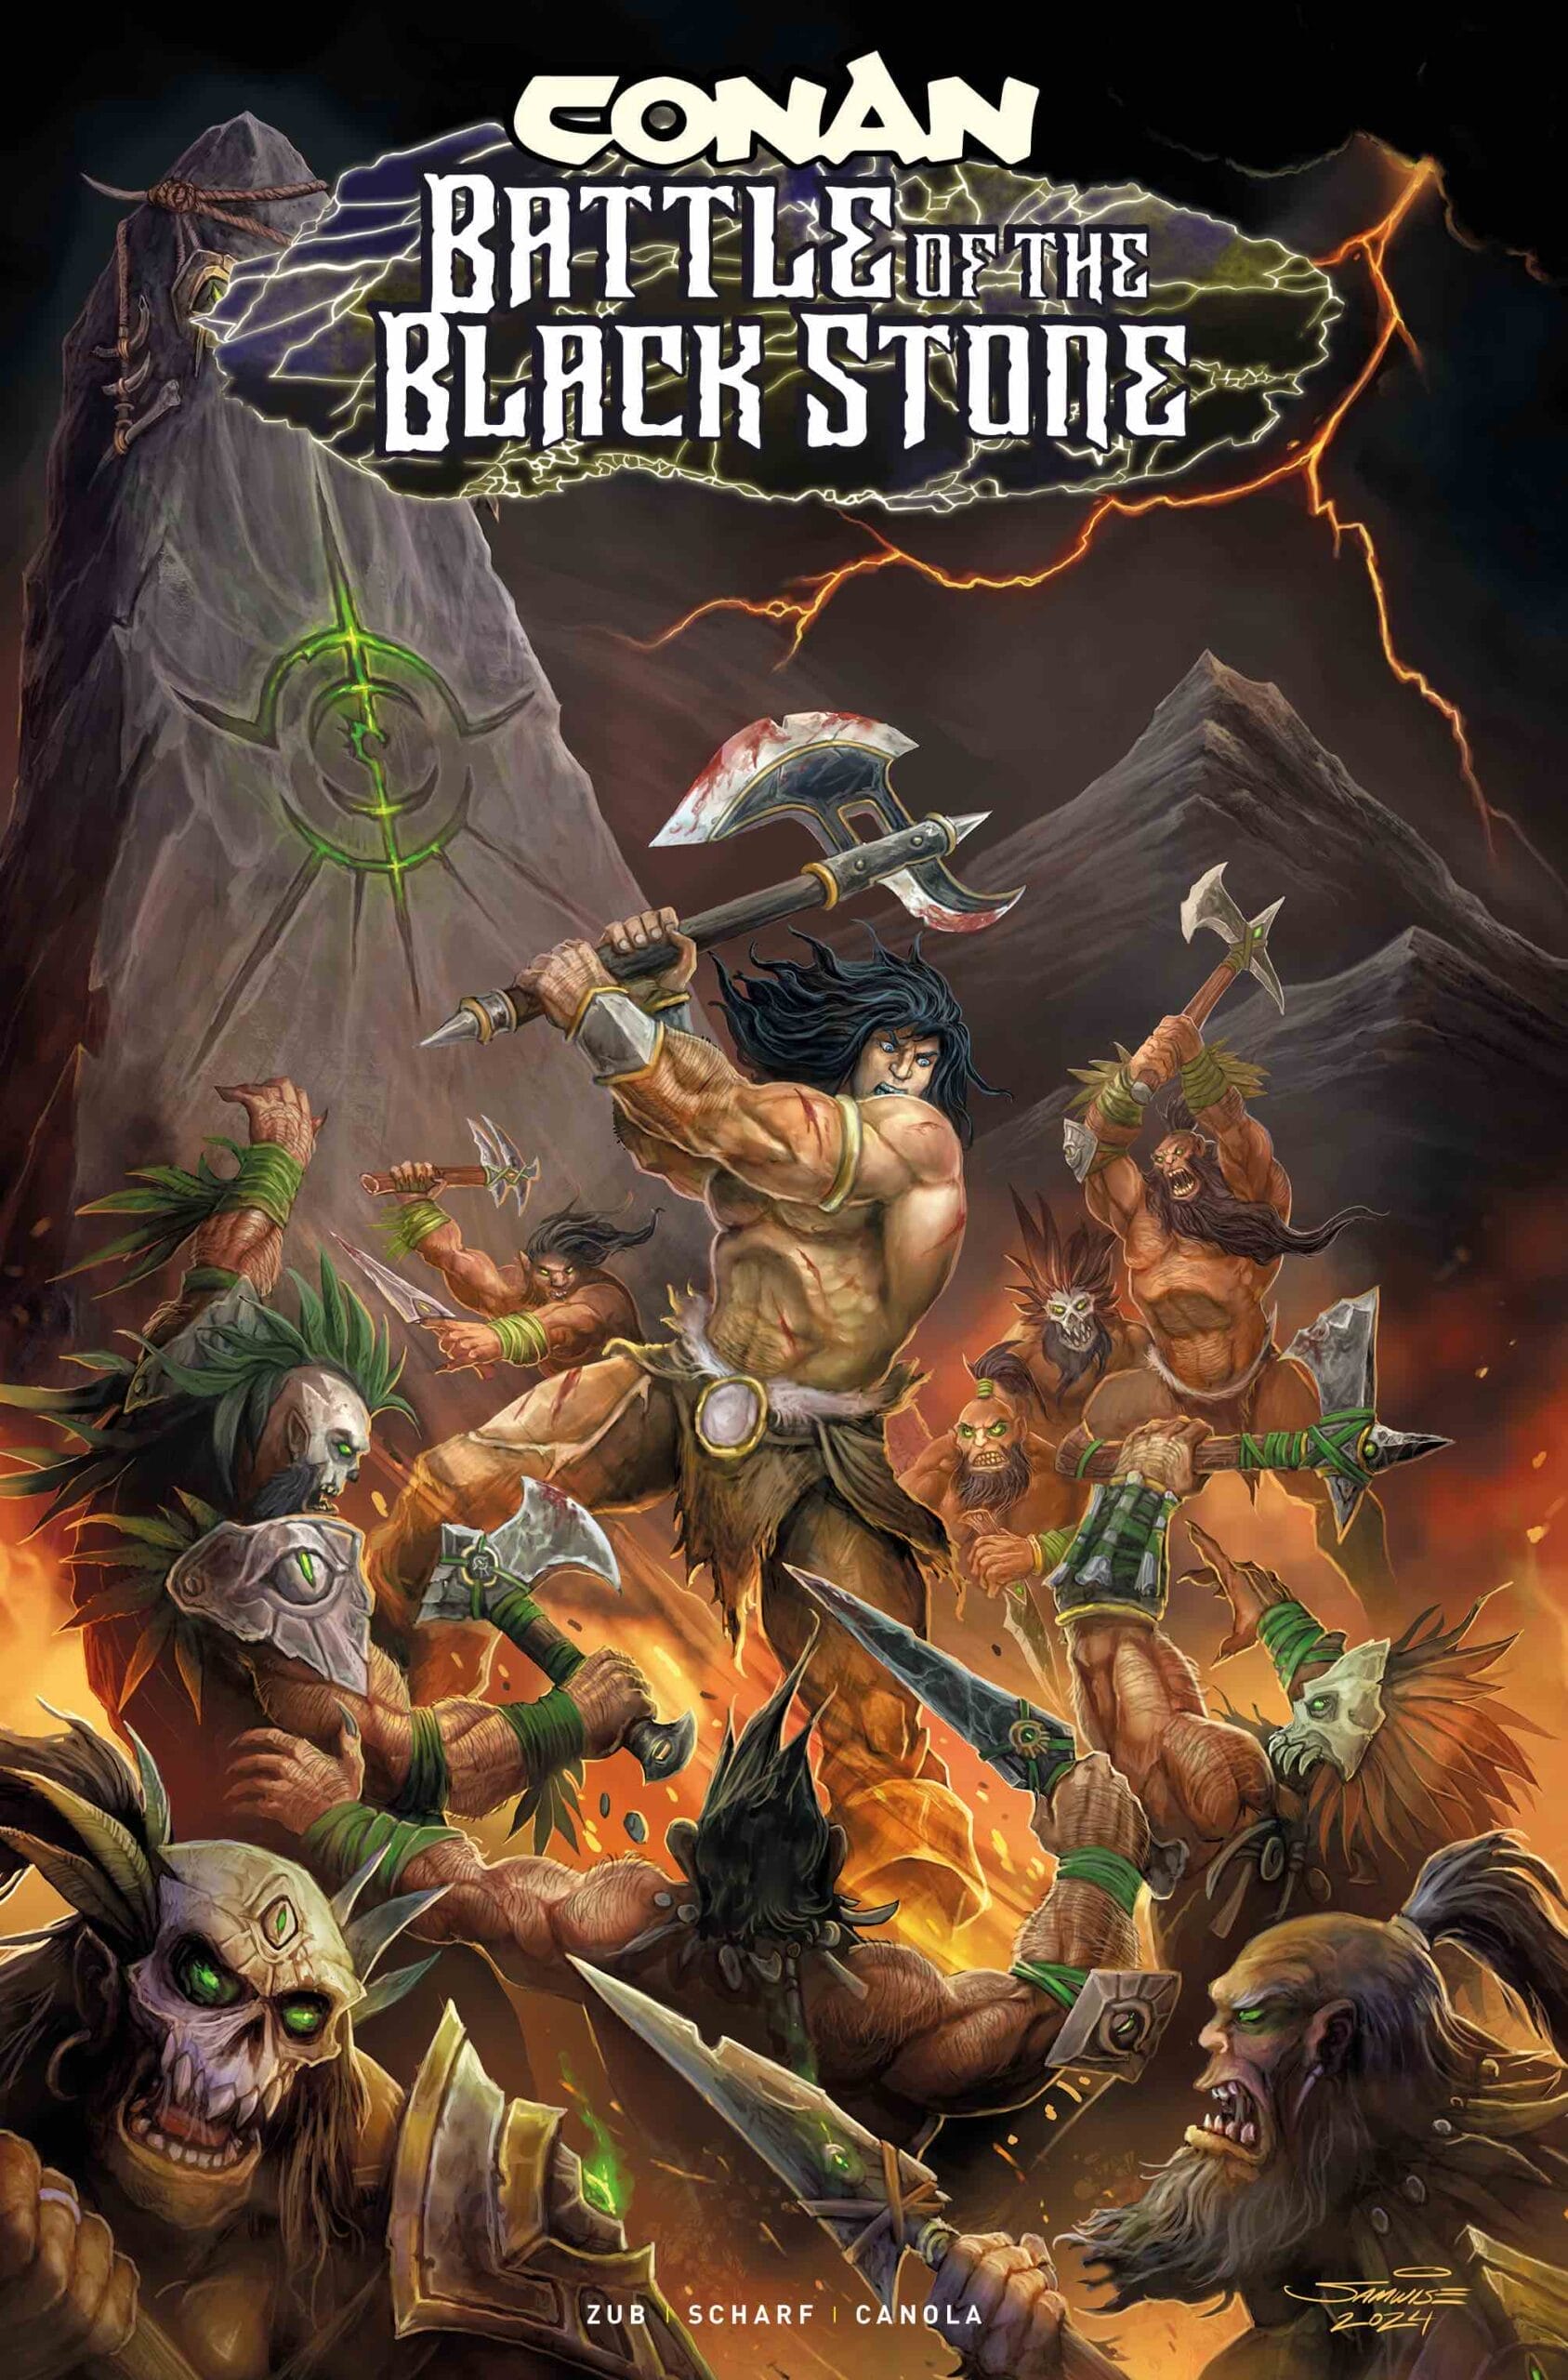 Comic book cover: Conan versus foes